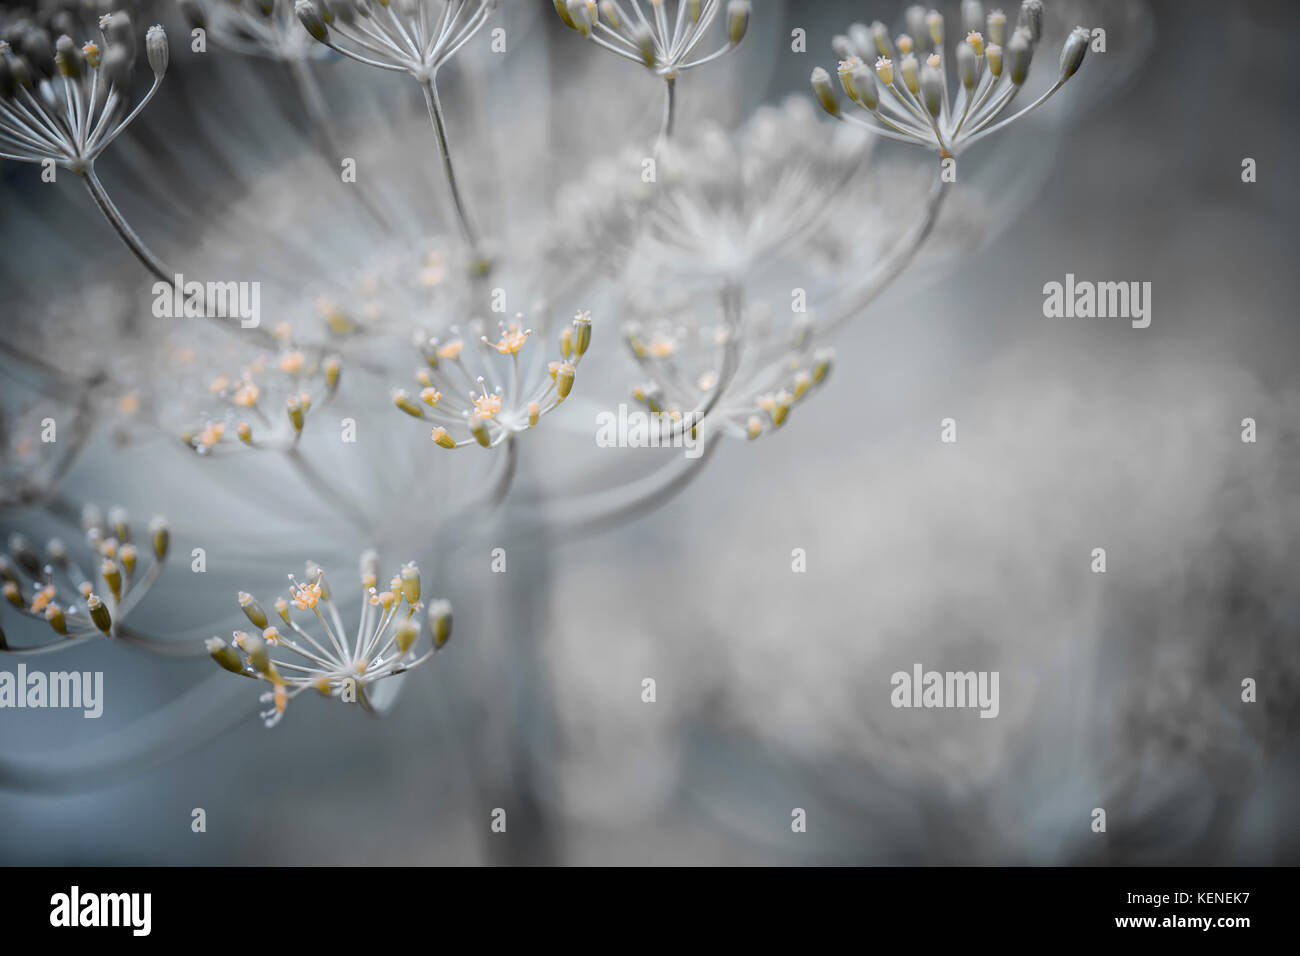 Makro Nahaufnahme der Blüte Dill Kräuter cluster Blumen wachsen im Garten Stockfoto